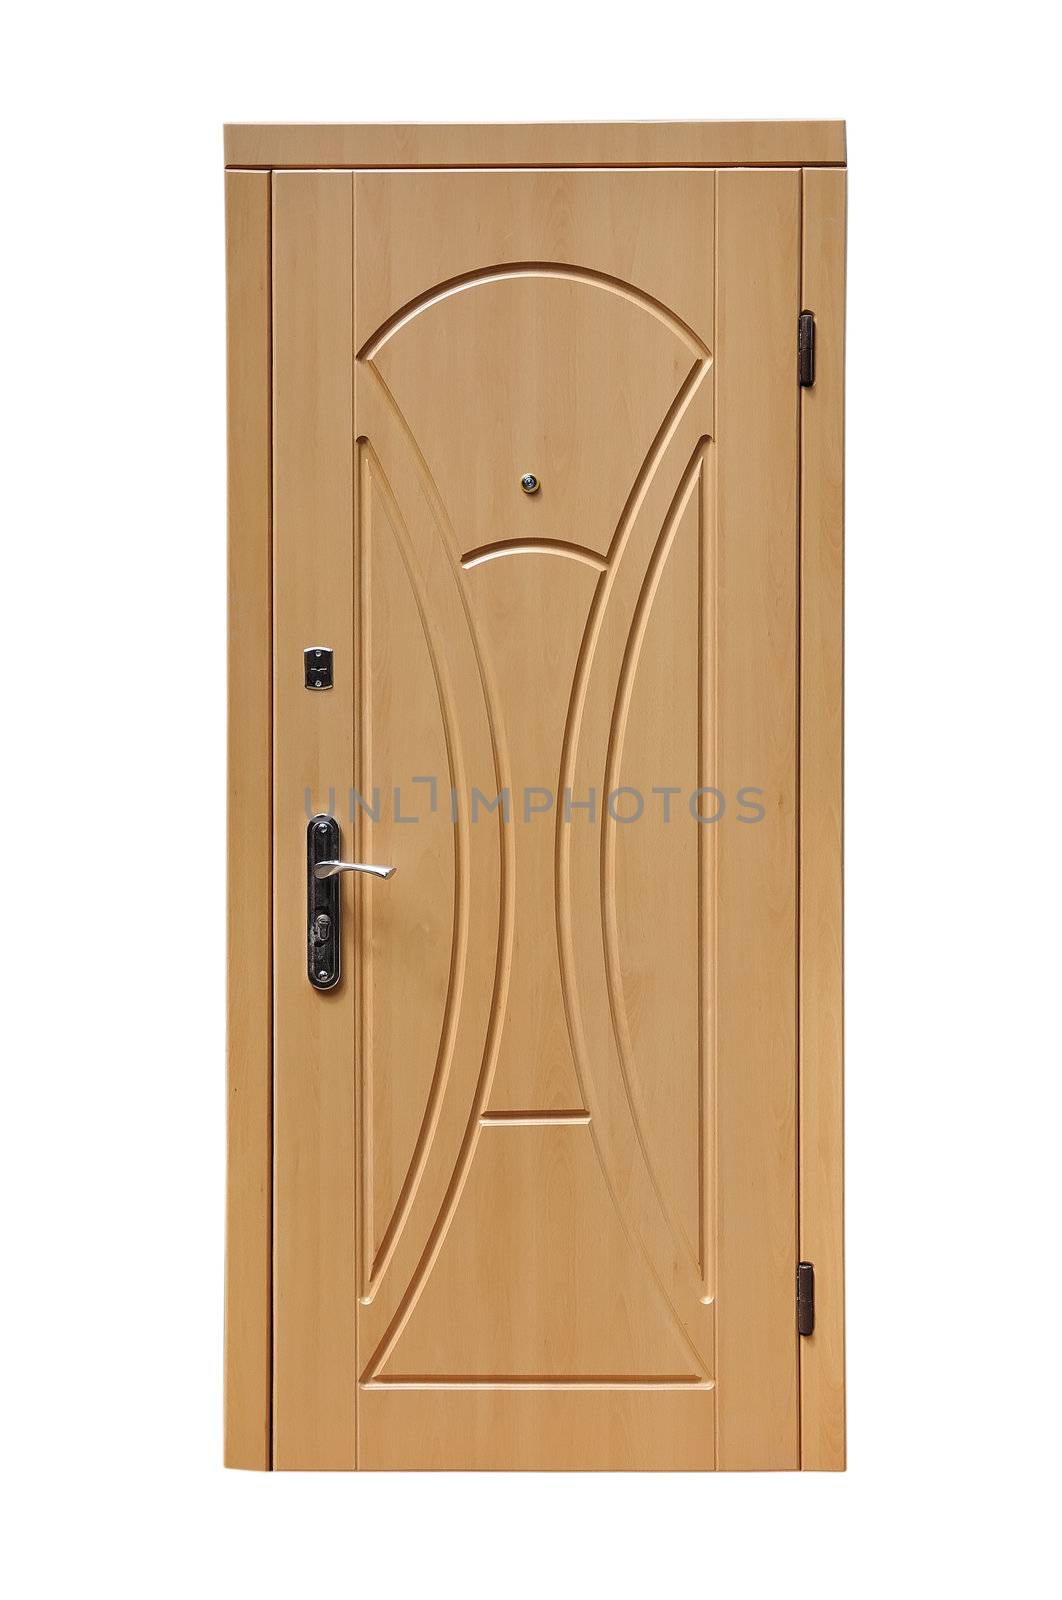 wooden door by vetkit